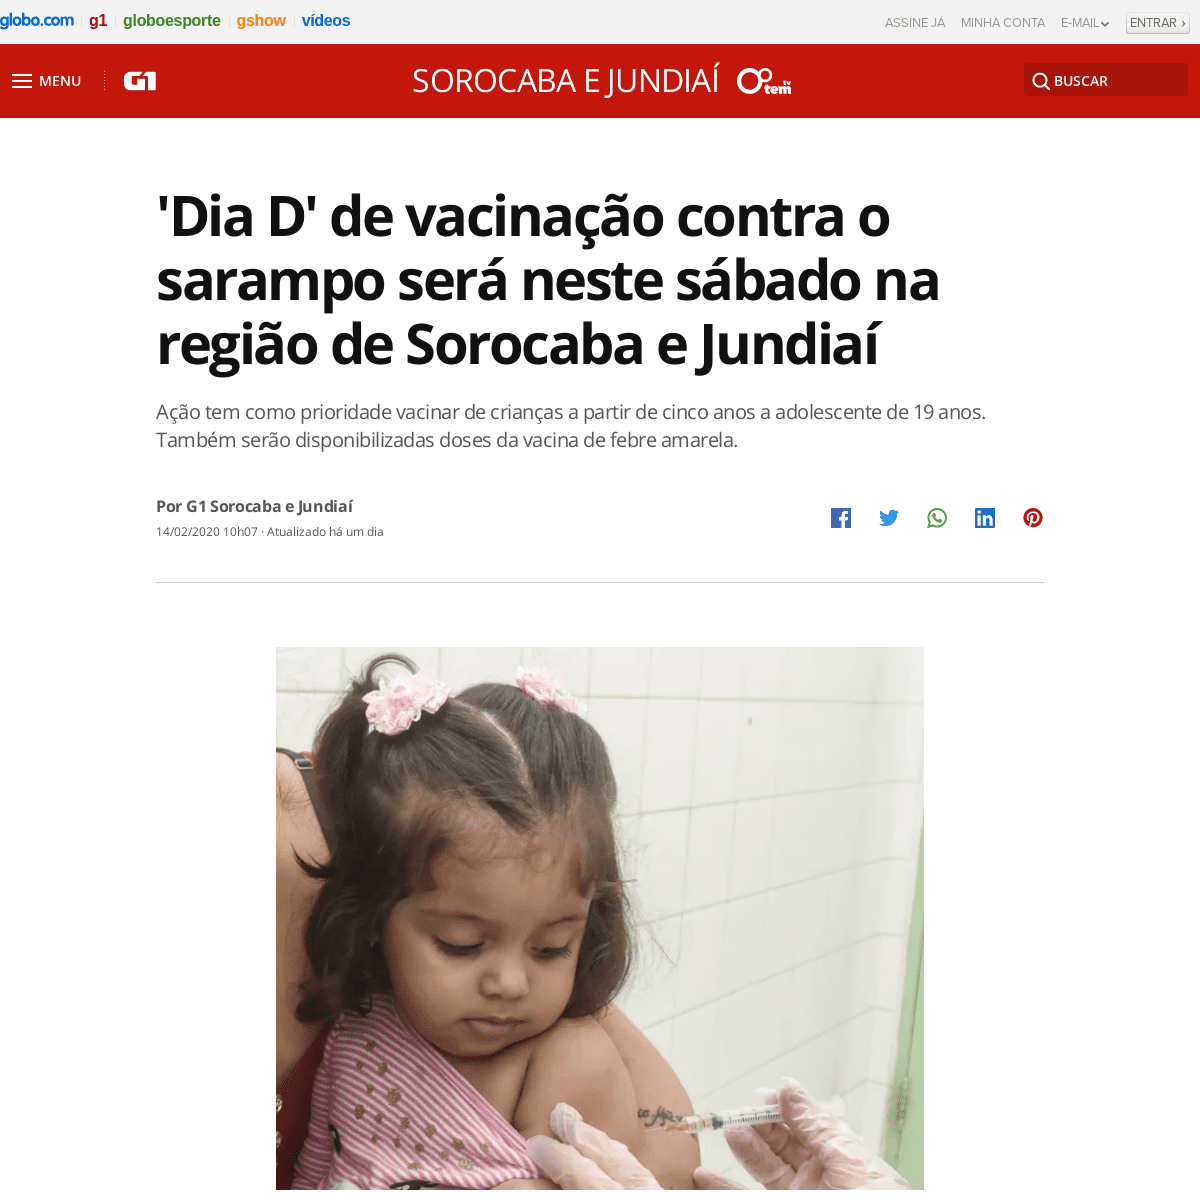 A complete backup of g1.globo.com/sp/sorocaba-jundiai/noticia/2020/02/14/dia-d-de-vacinacao-contra-o-sarampo-sera-neste-sabado-n